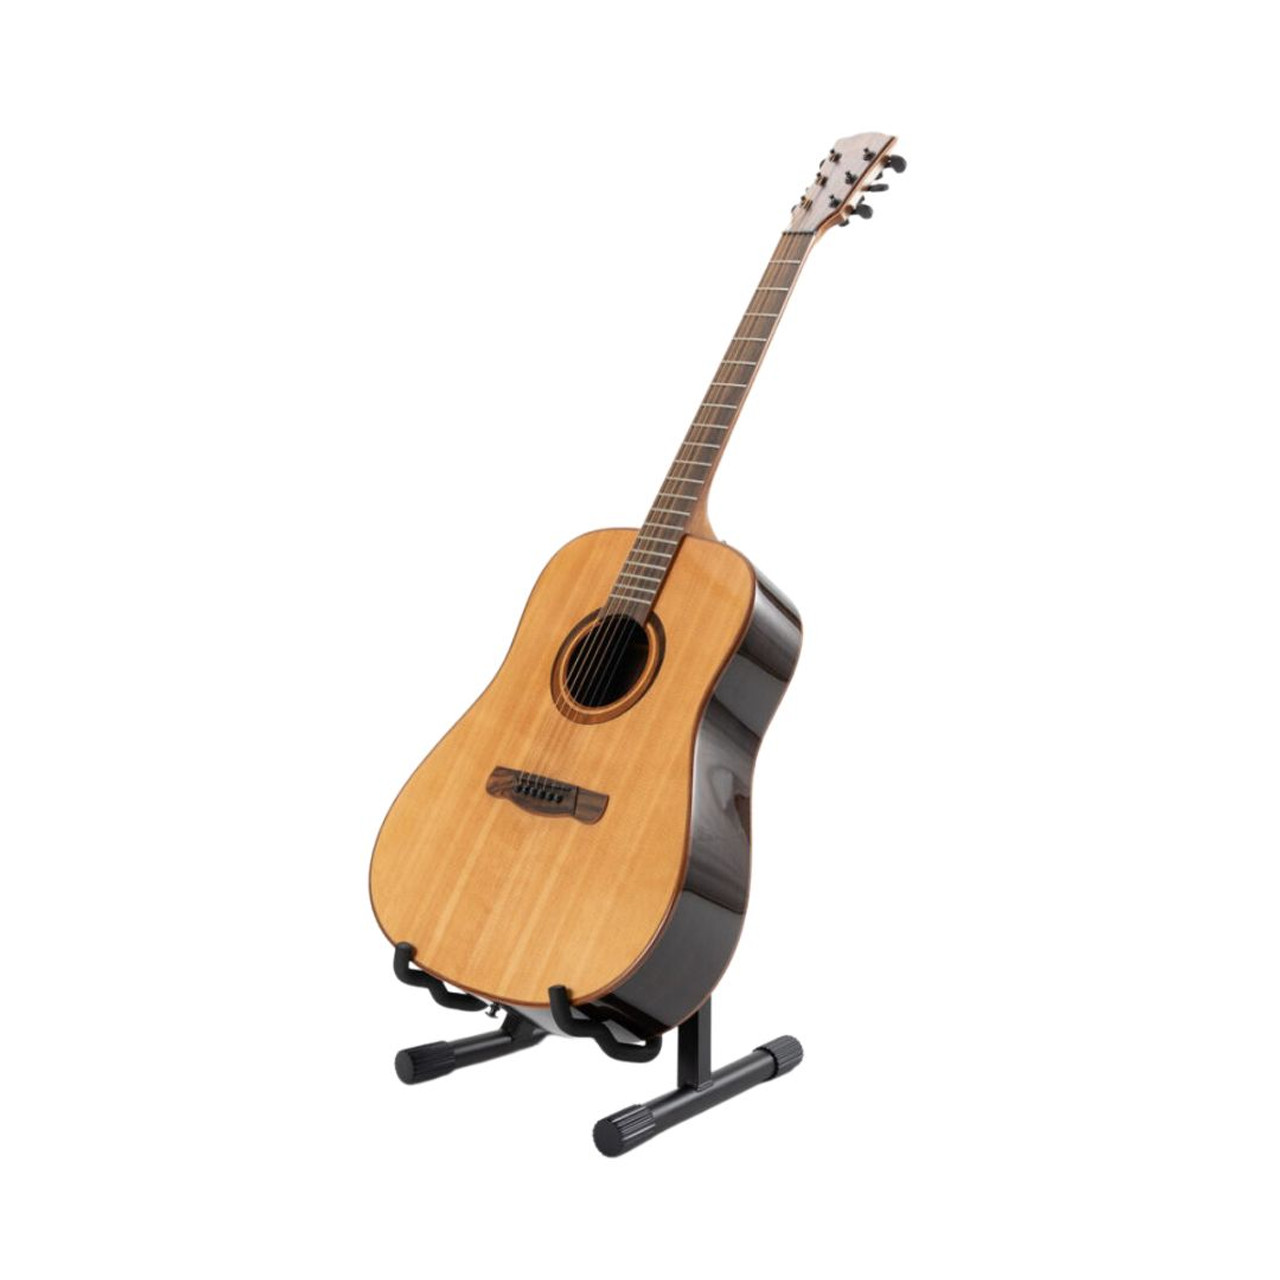 EDMBG A-Frame Design Guitar Stand for sale online